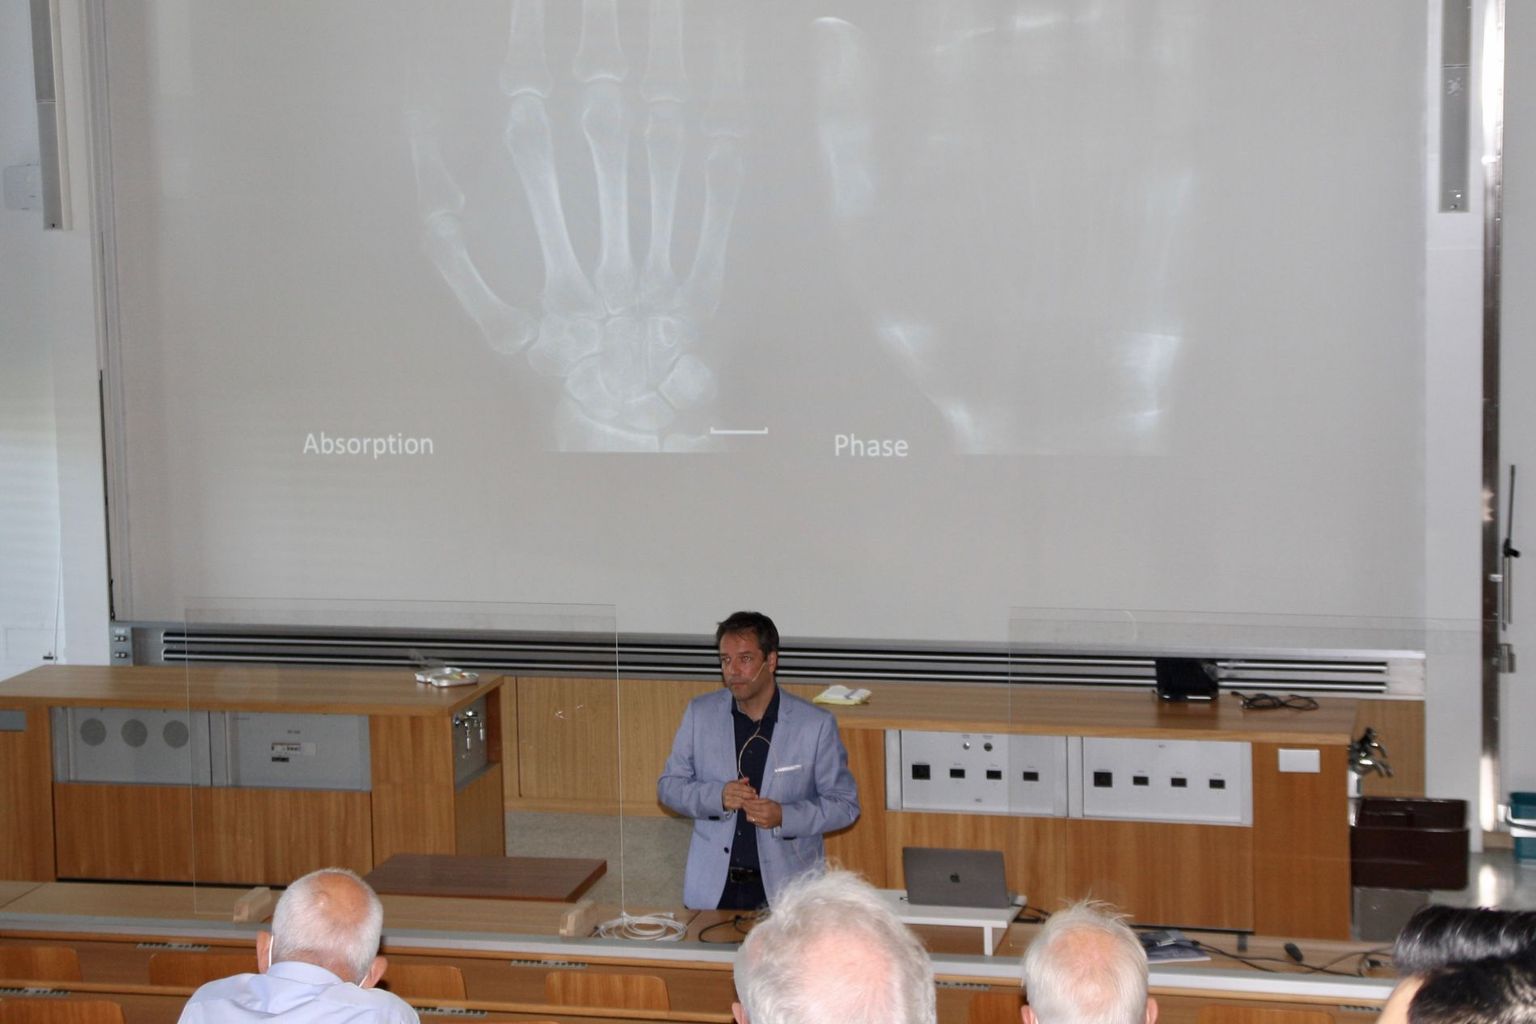 Prof. Dr. Marco Stampanoni stellt vor beim Röntgen-Symposium 2021 wie die Röntgenphasenanalyse die Absorptionsbilder ergänzt.